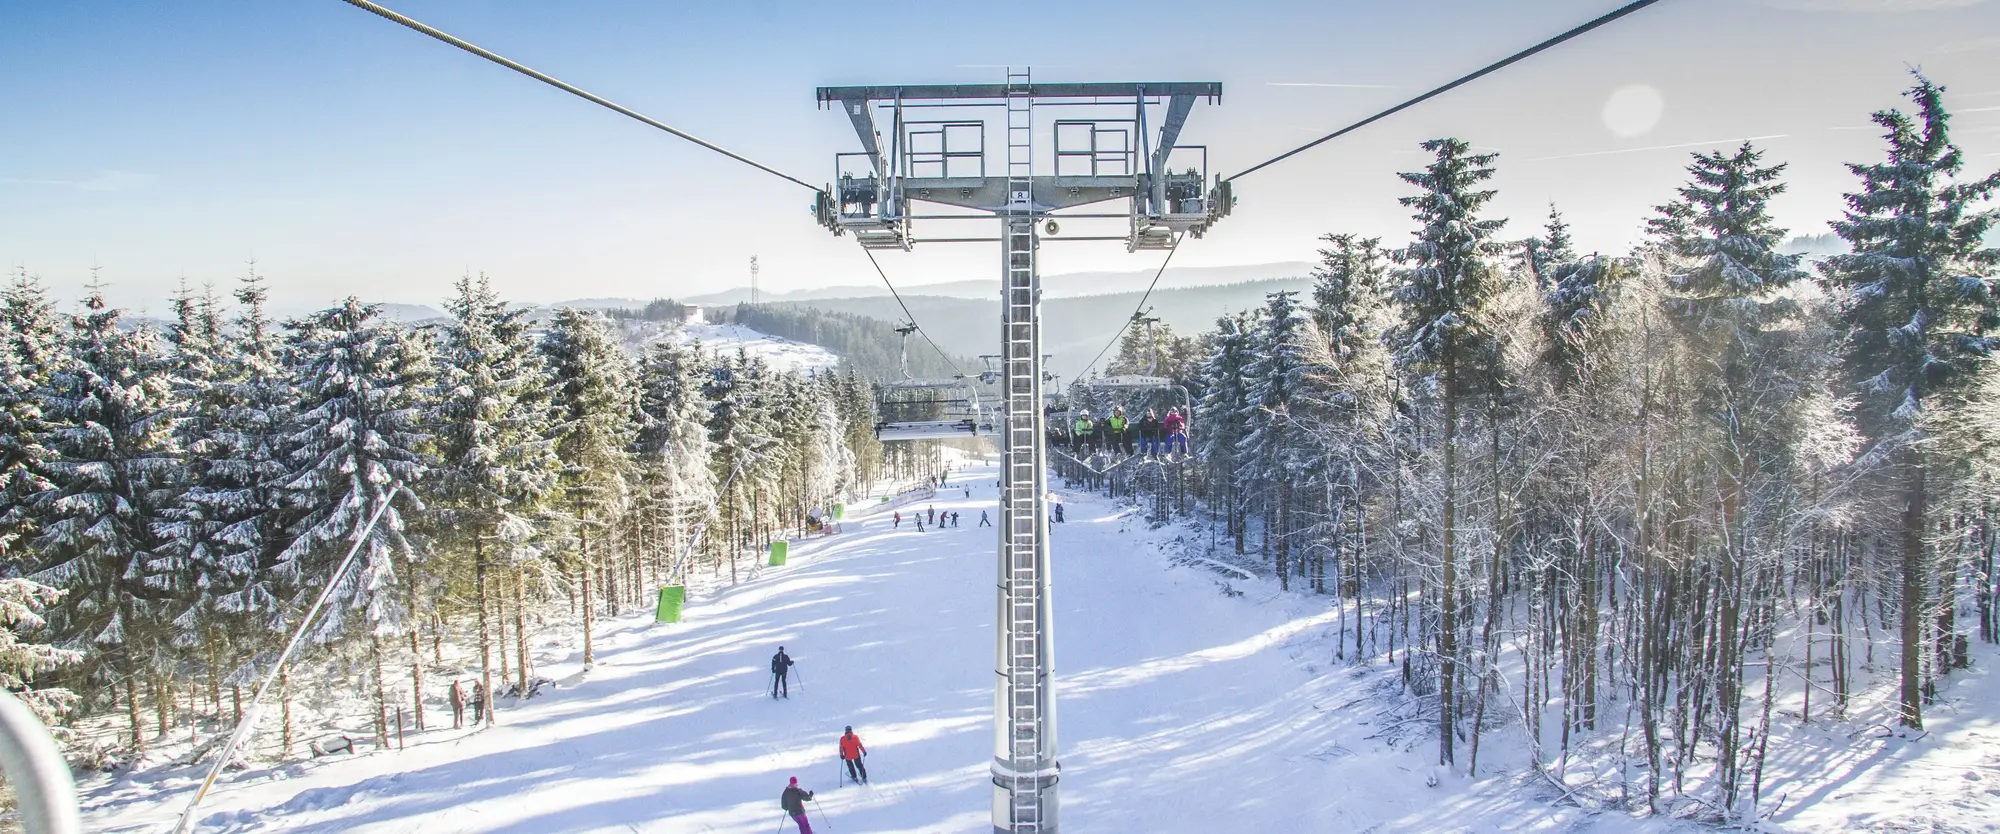 Ein Sessellift, der über einen Skihang mit Ski- und Snowboardfahrern hinwegfährt.